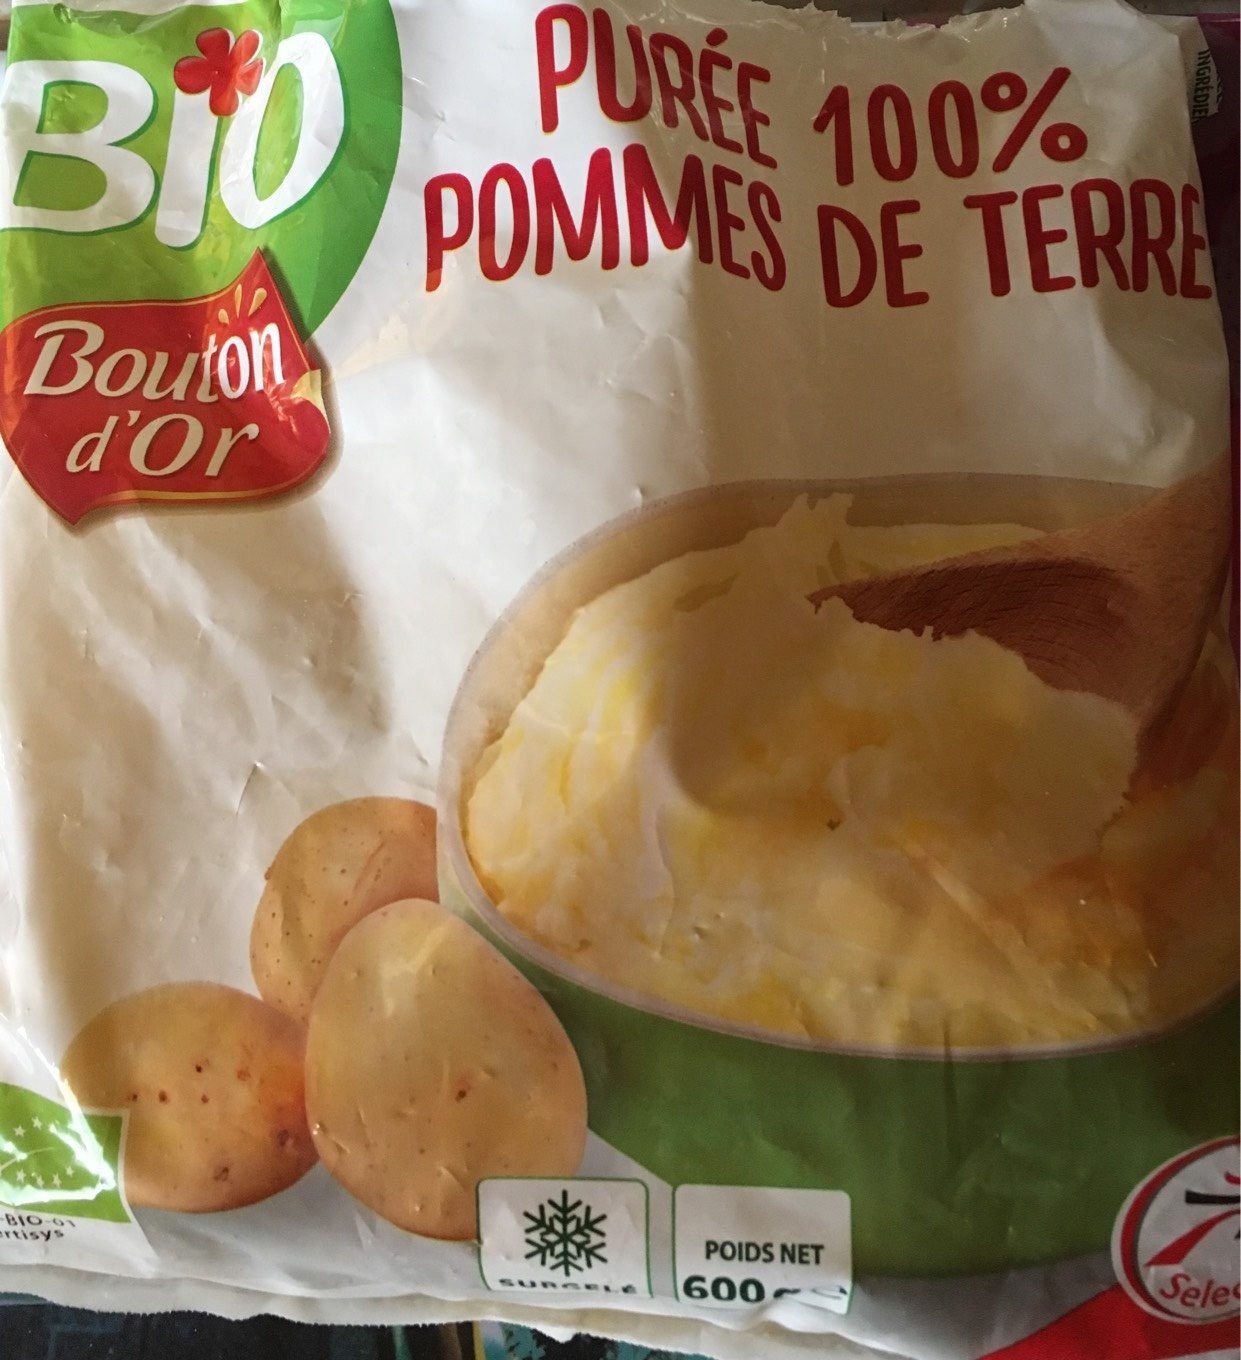 Purée 100% de pommes de terre - Product - fr